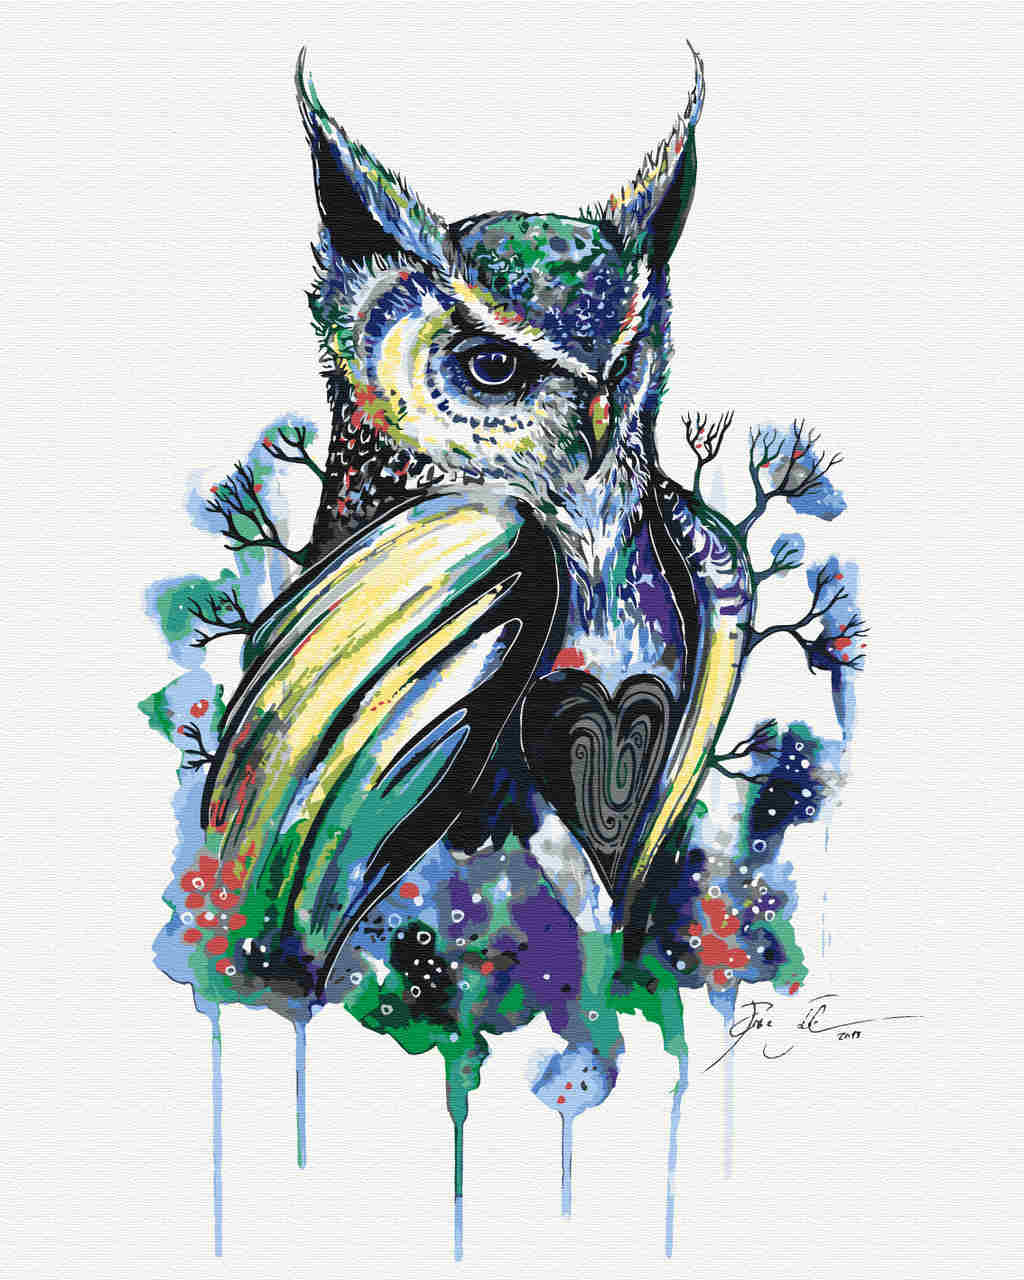 Malen nach Zahlen - scber owl - by Pixie Cold, mit Rahmen von Pixie Cold